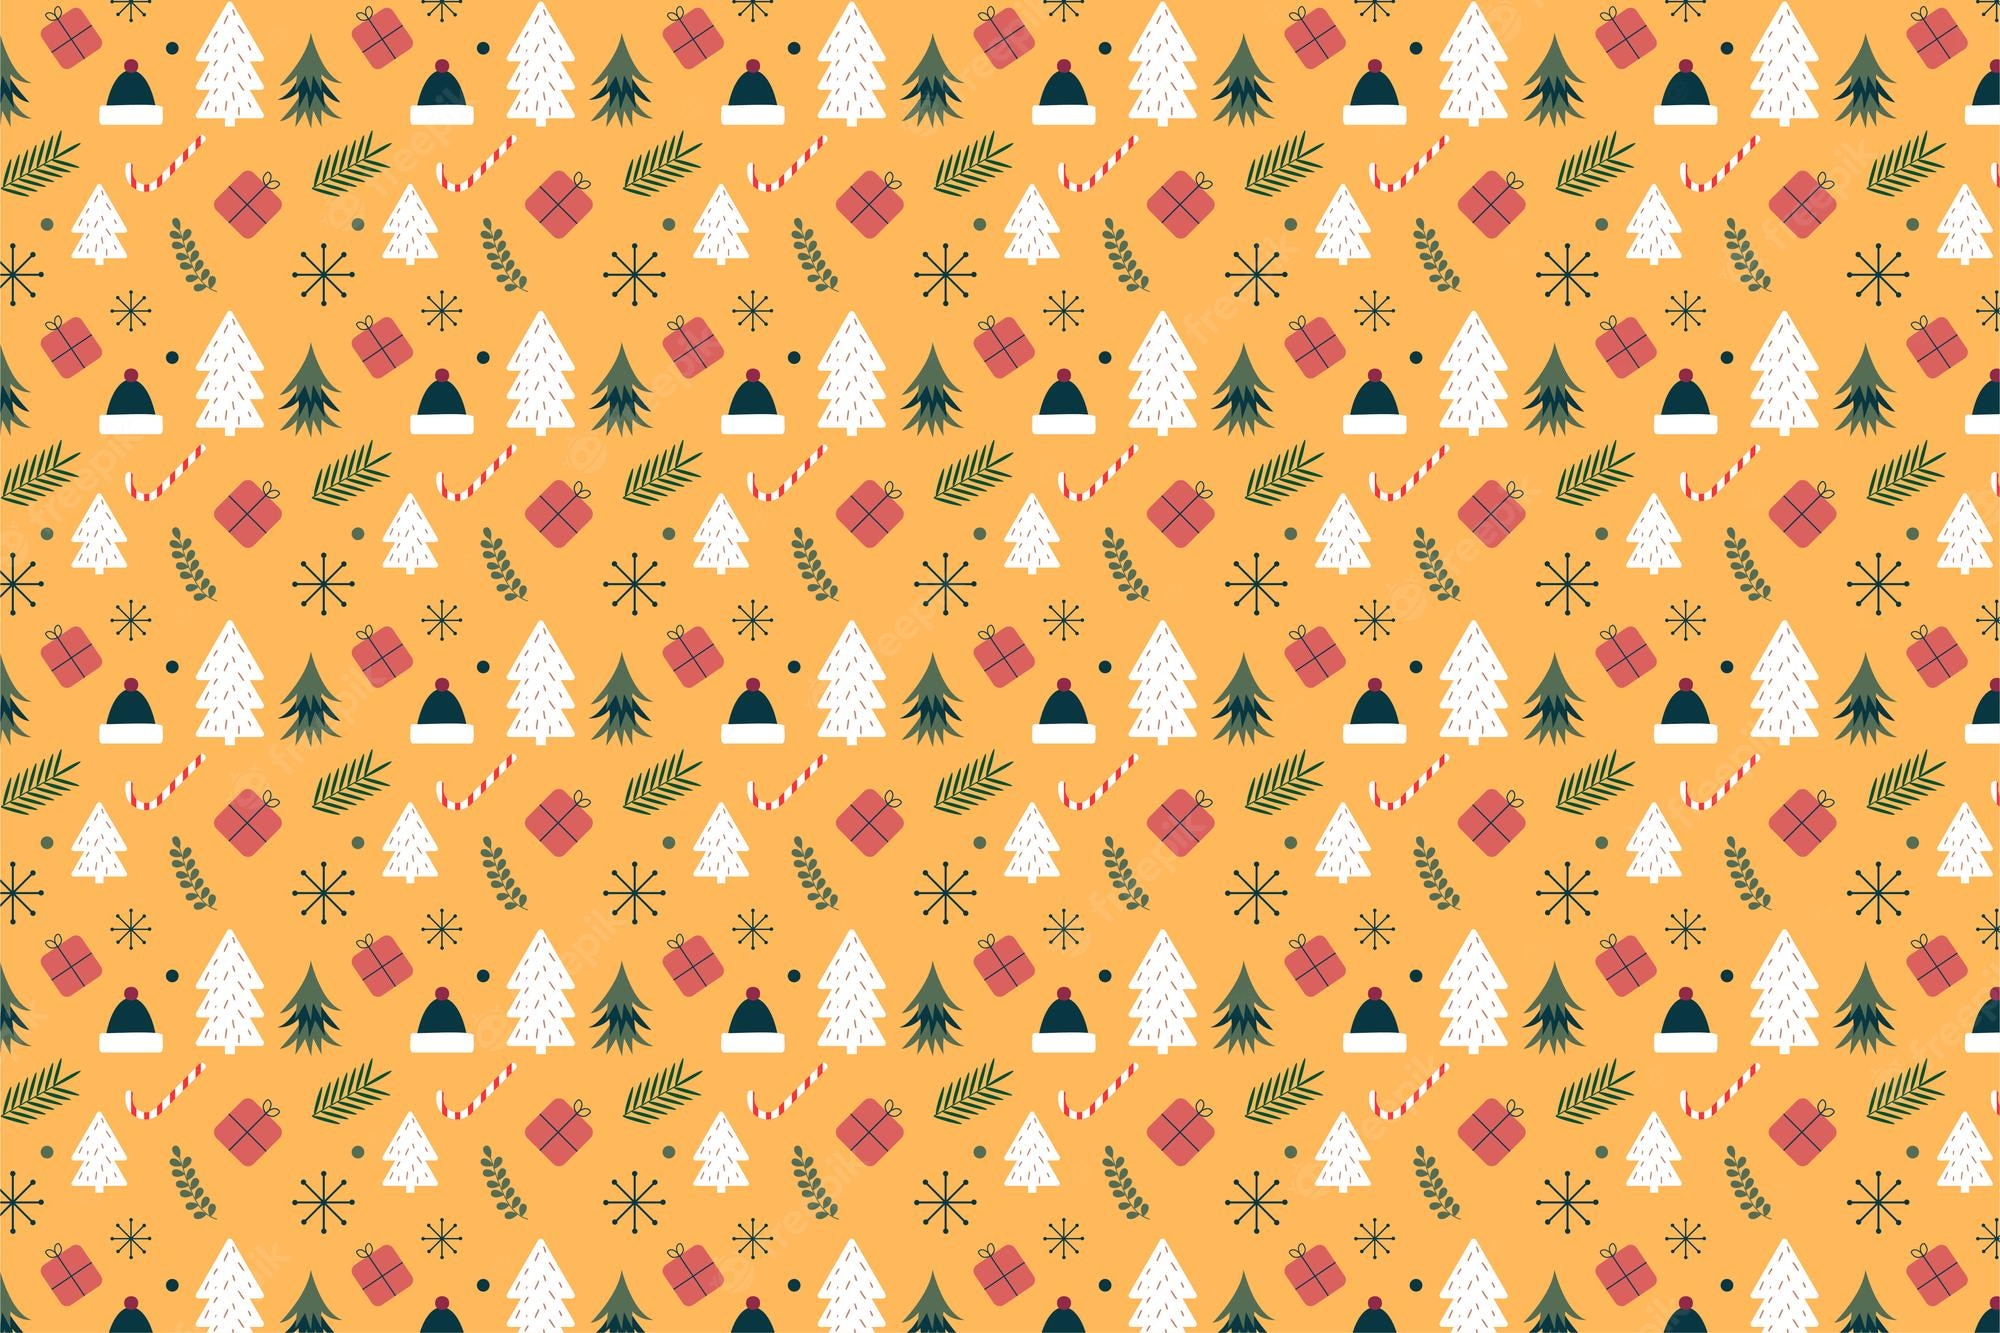 Yellow Christmas Wallpapers